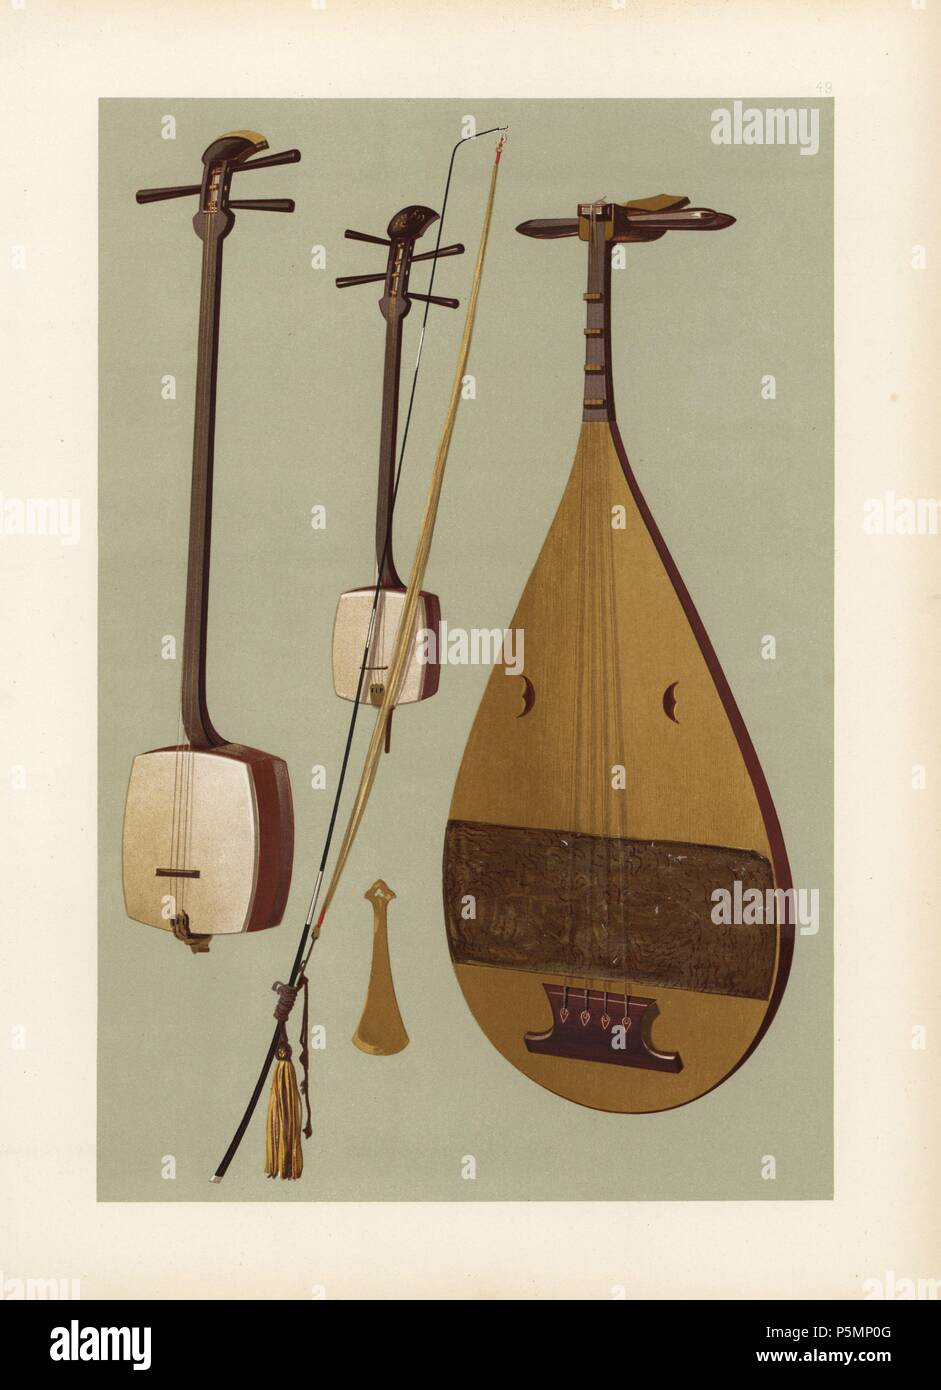 Instrumentos de cuerda: Siamisen japonés (shamisen), kokiu (violín) con  arco largo y biwa (laúd). La Siamesin es el instrumento de cuerda japonés  más frecuentes y es interpretado por el canto a las